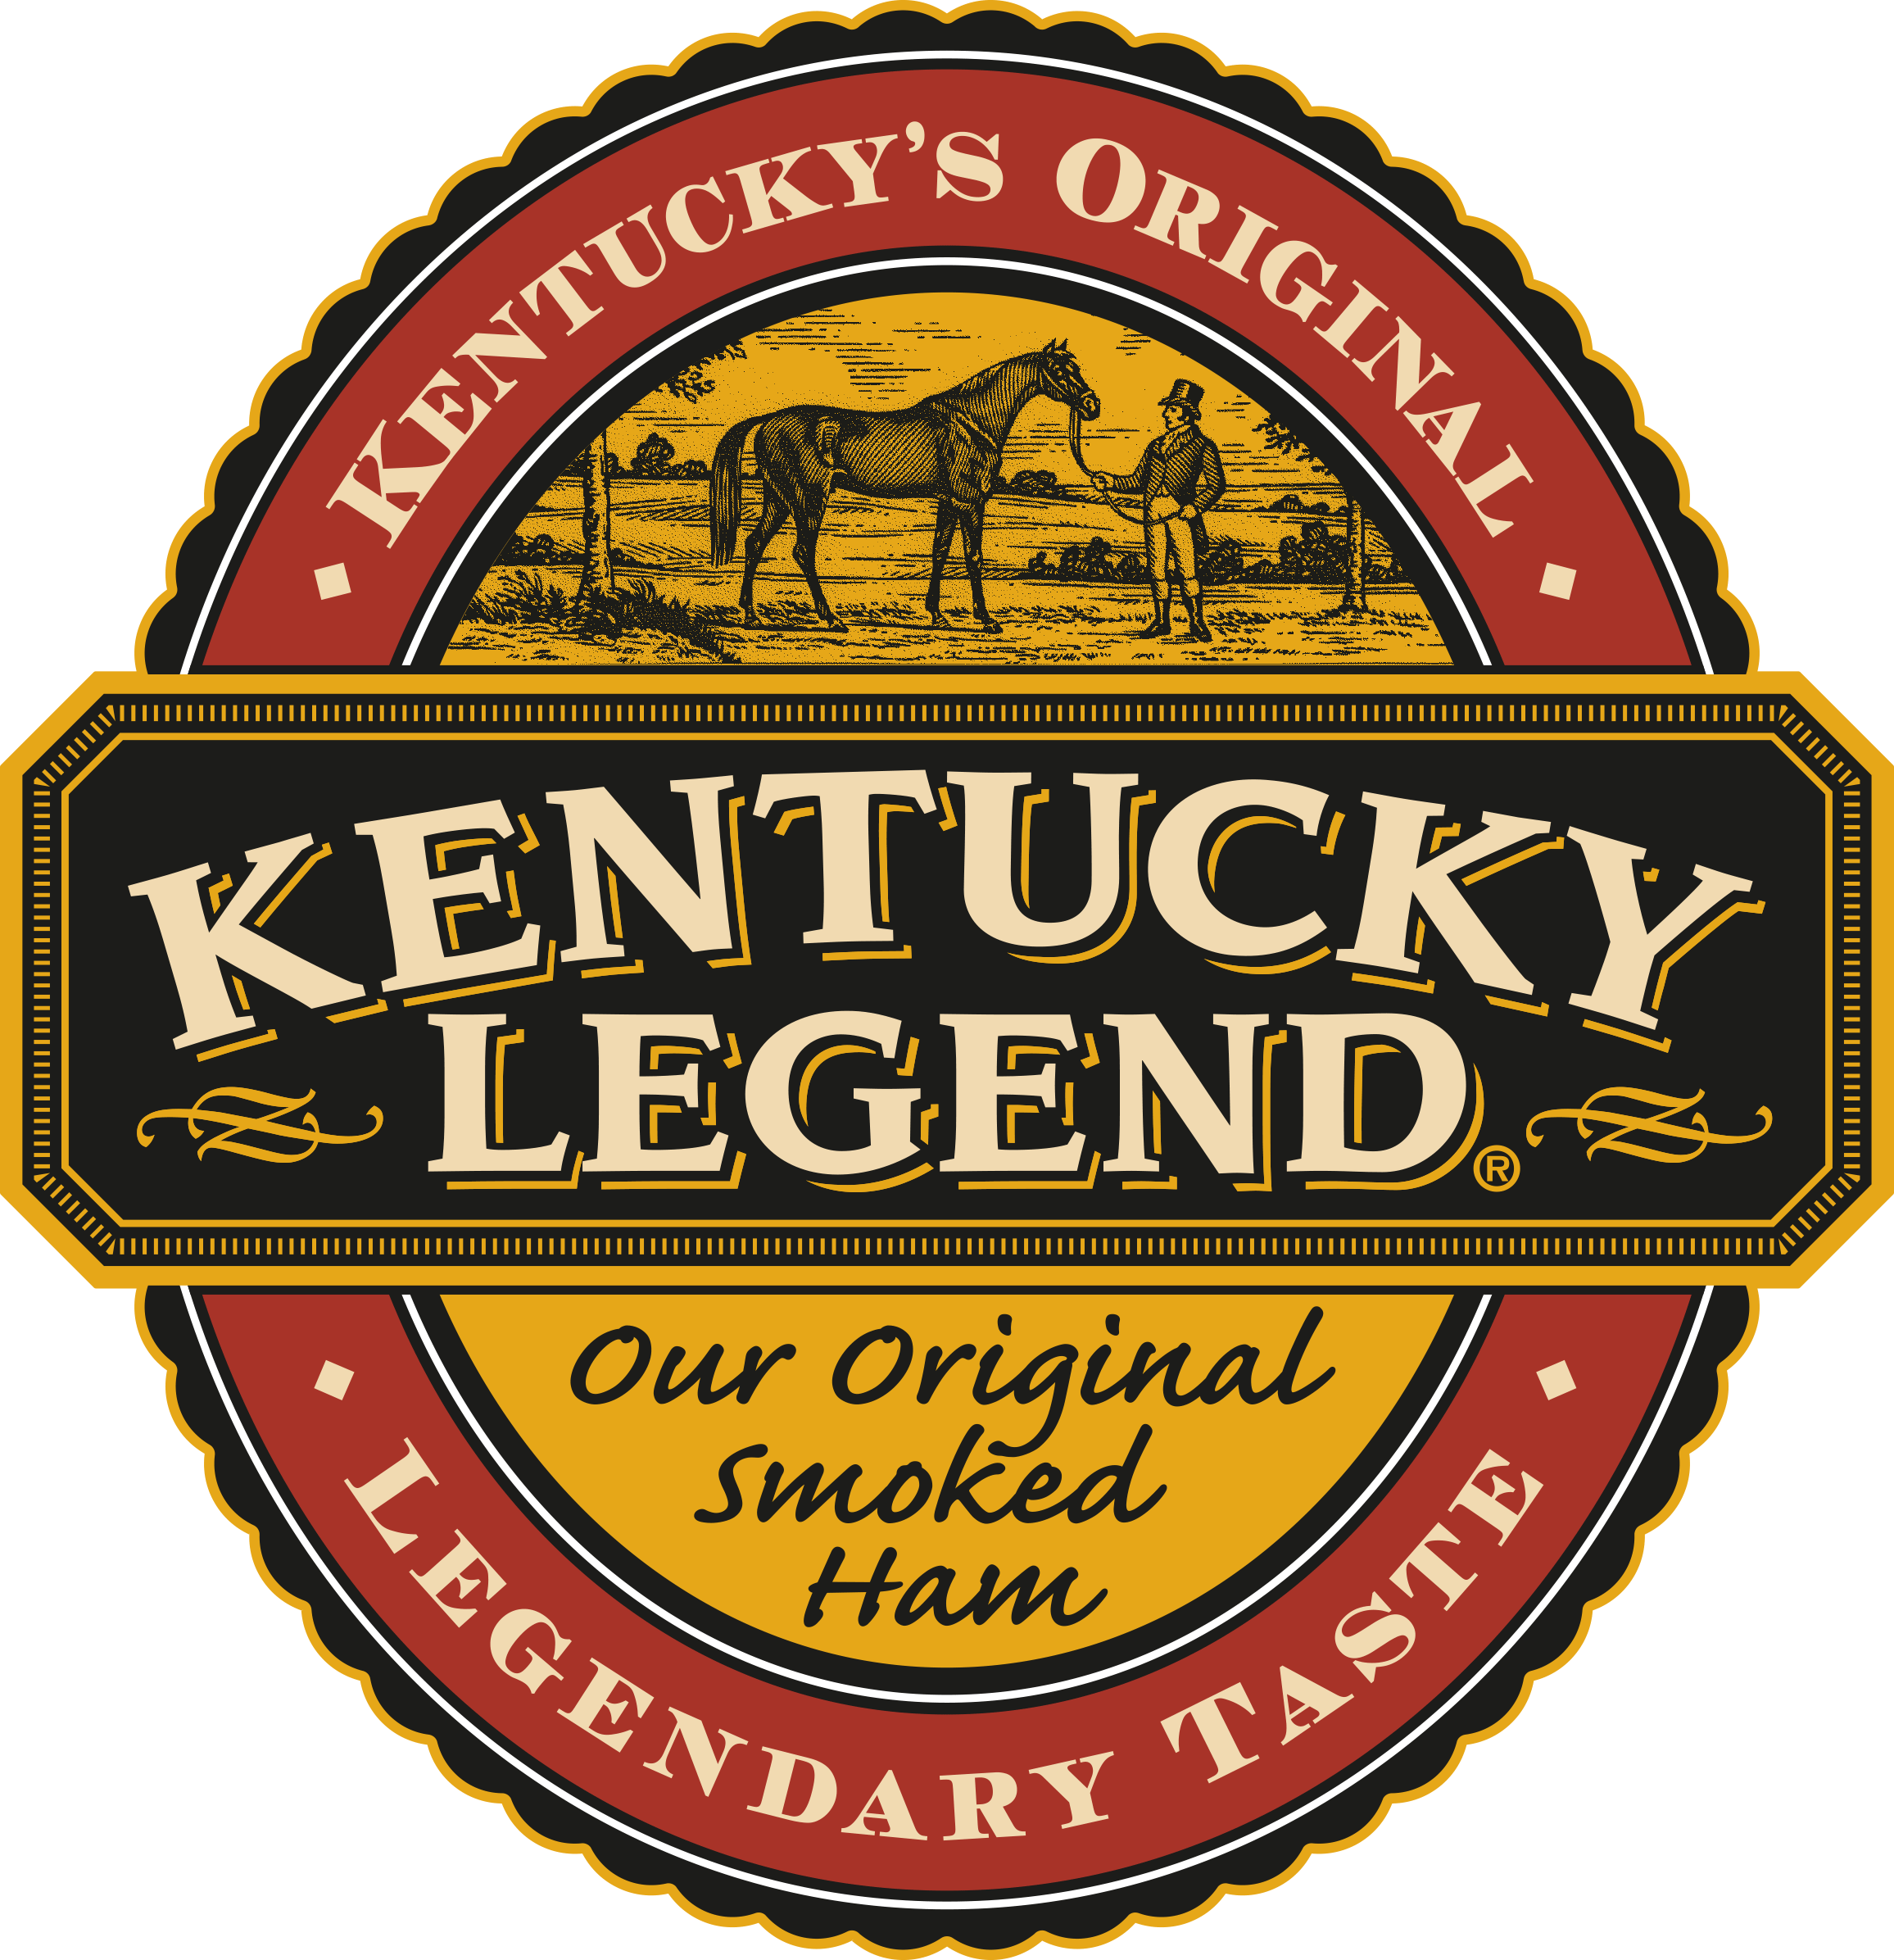 Kentucky Legend